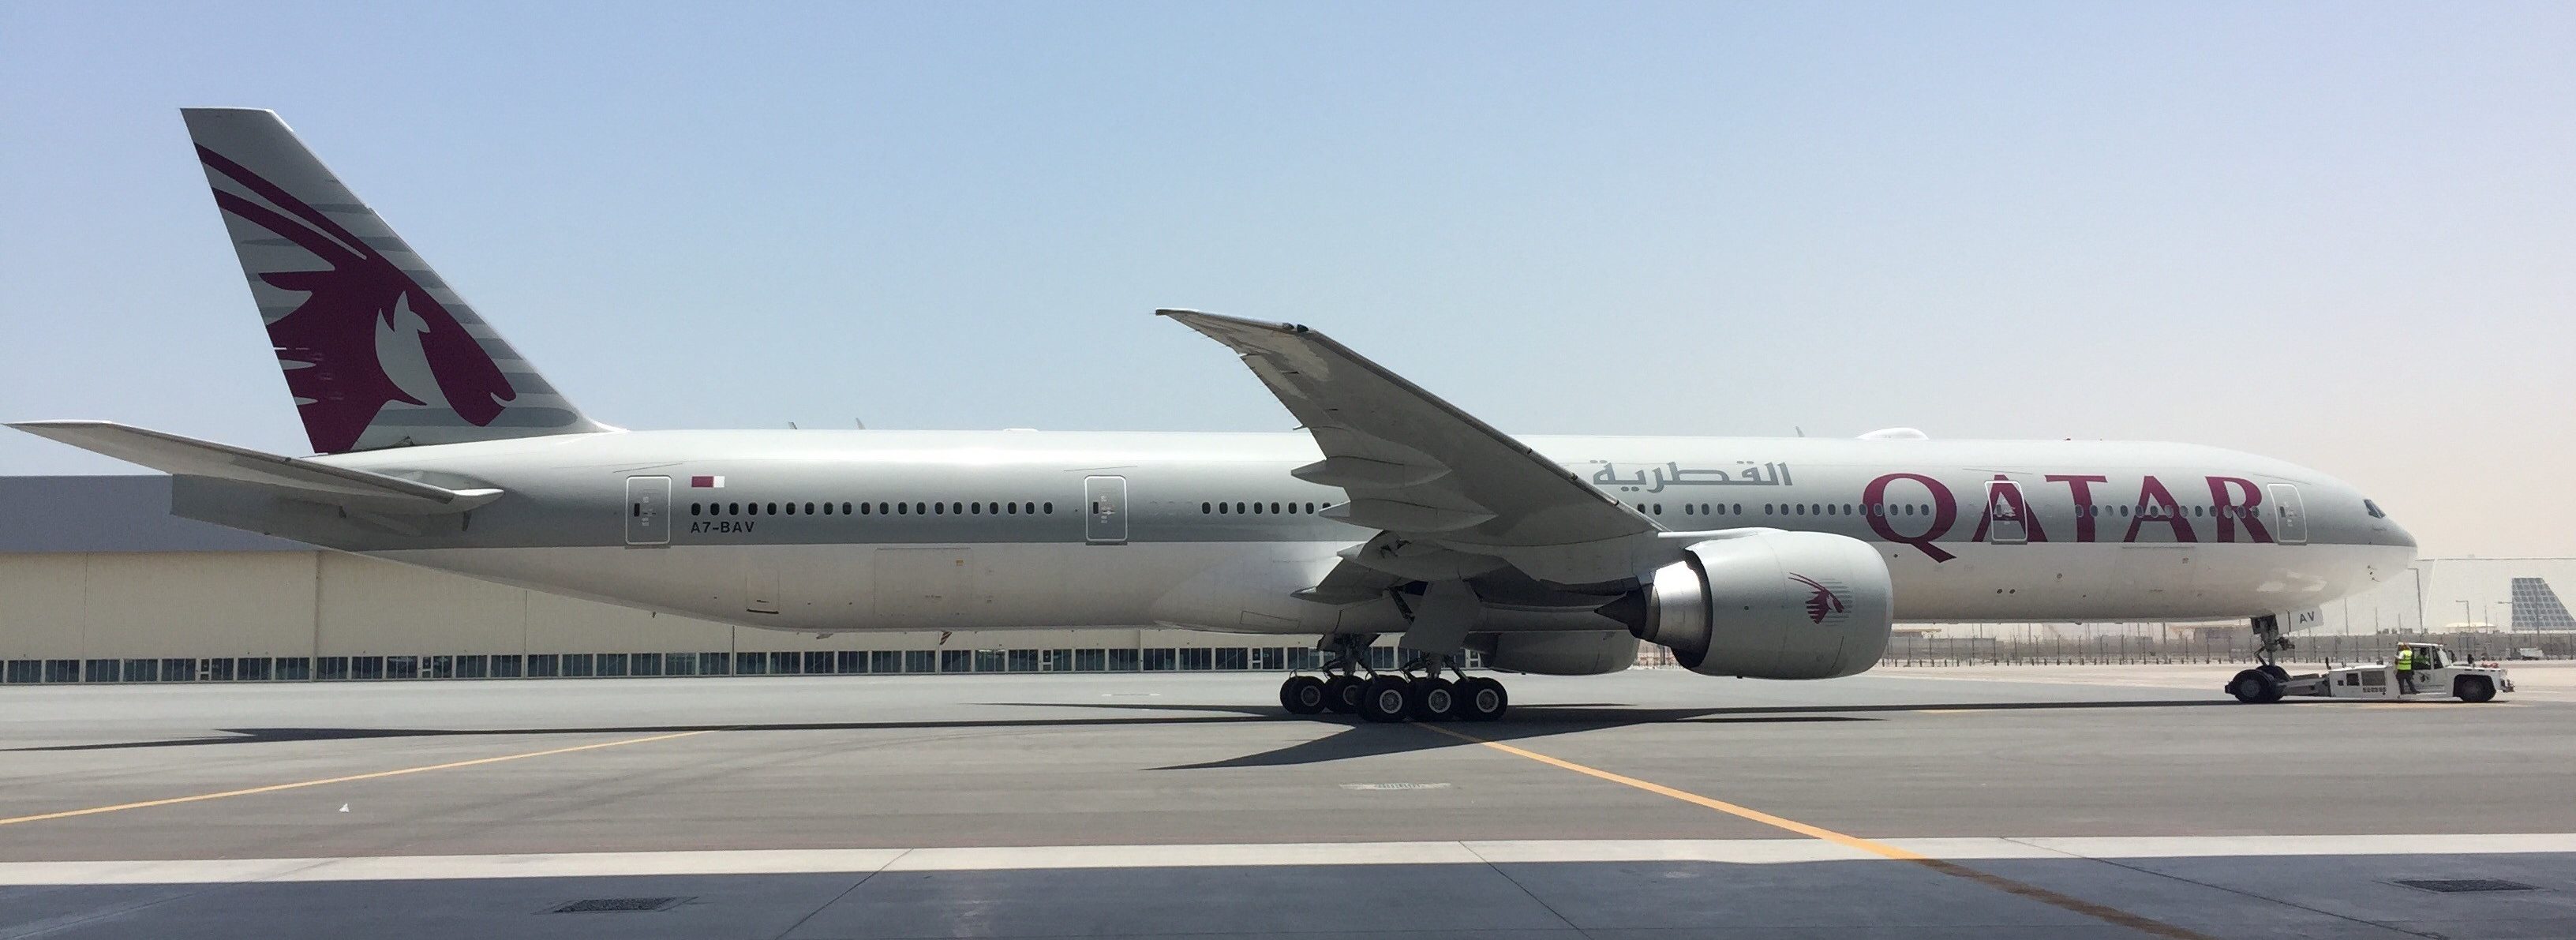 Qatar Airways ultima detalles para su arribo a Chile y se reúne con la JAC para gestionar permisos